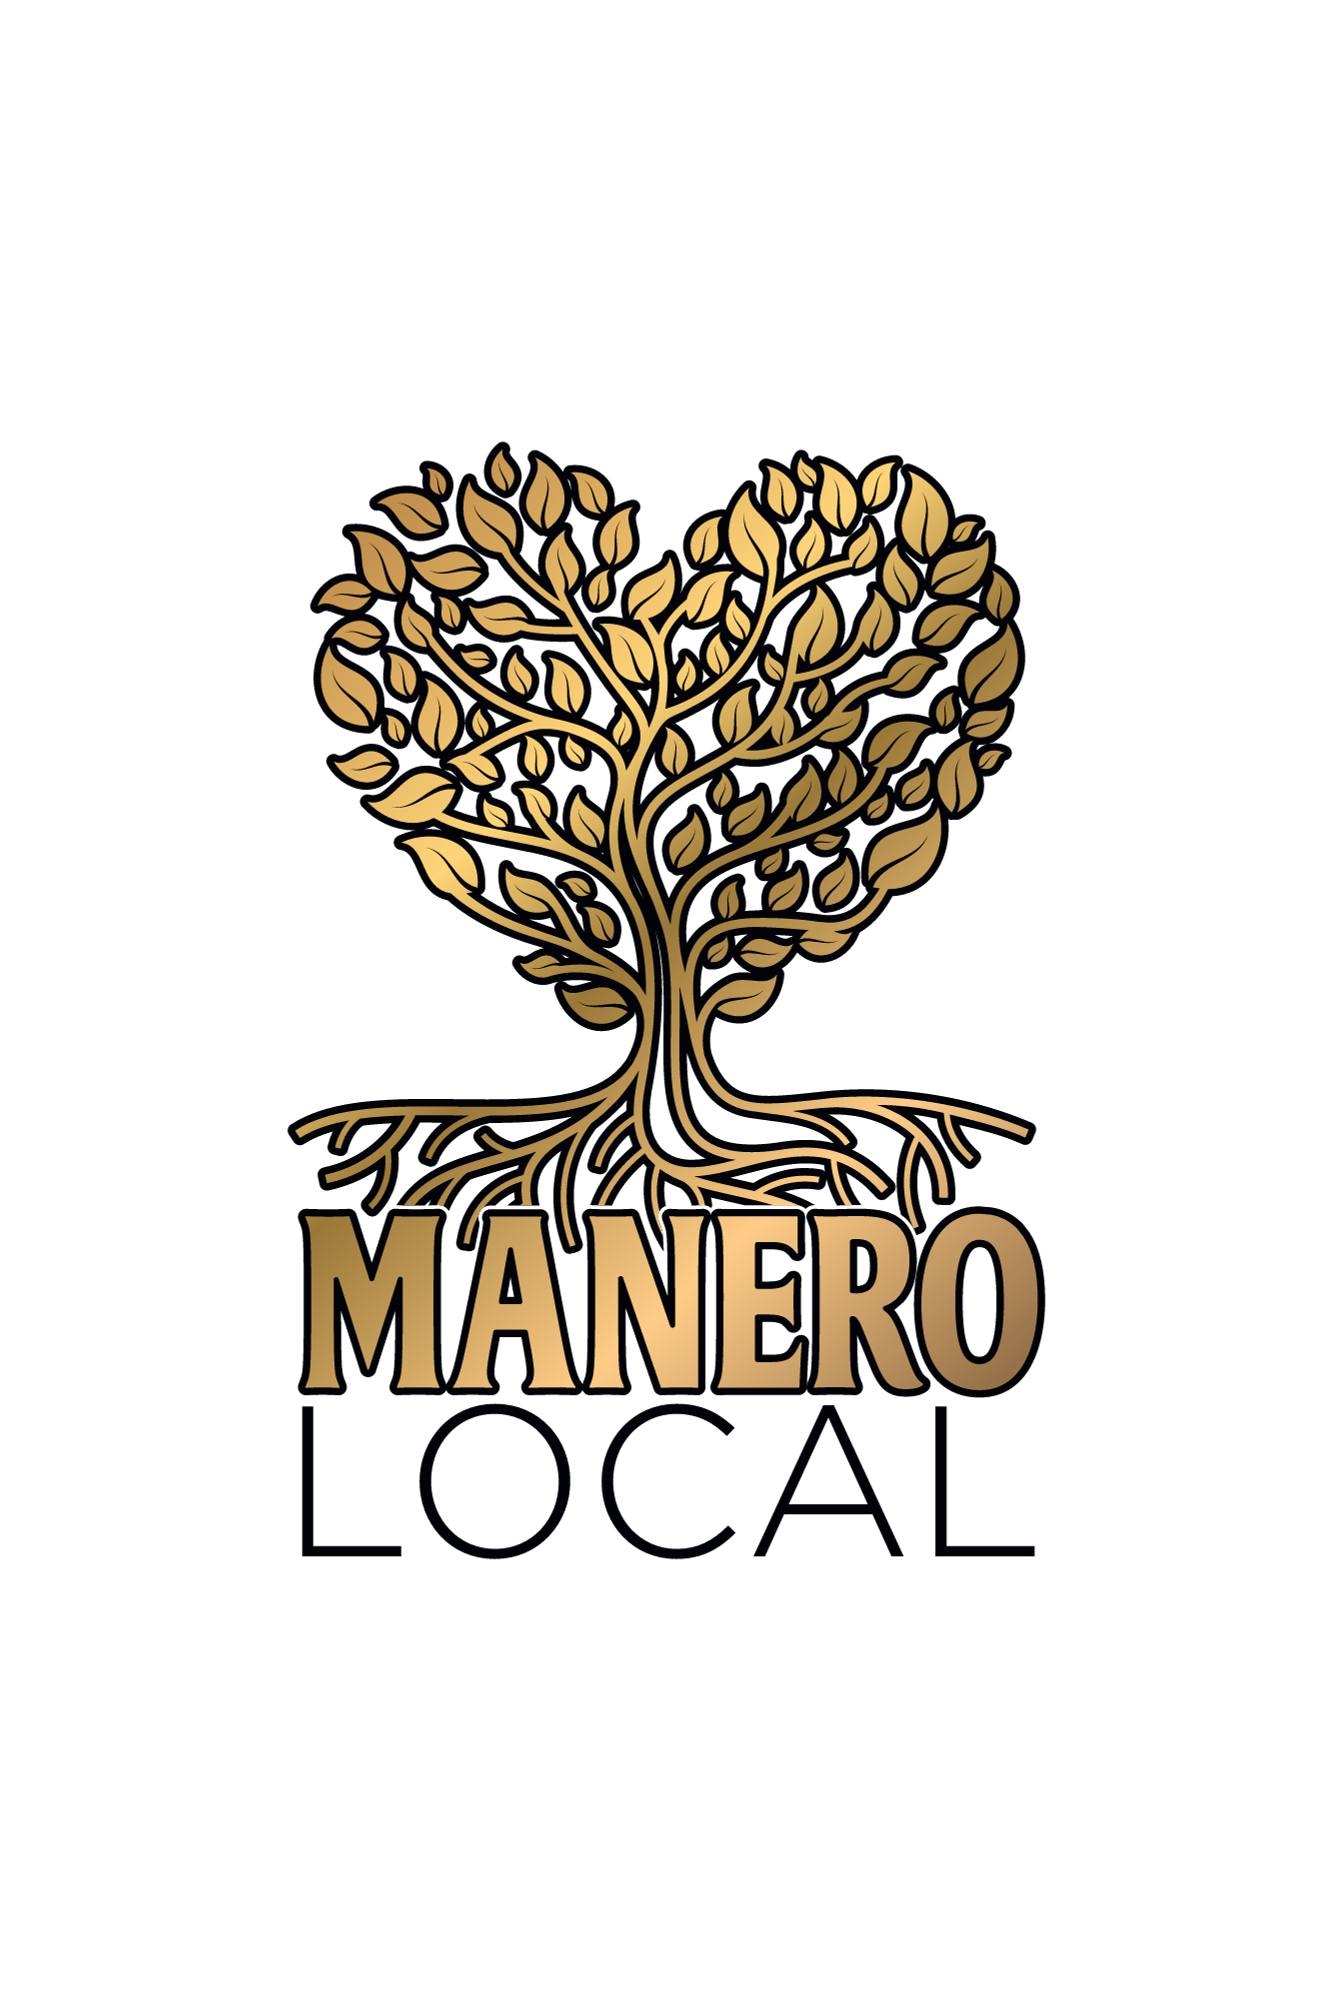 Manero Local